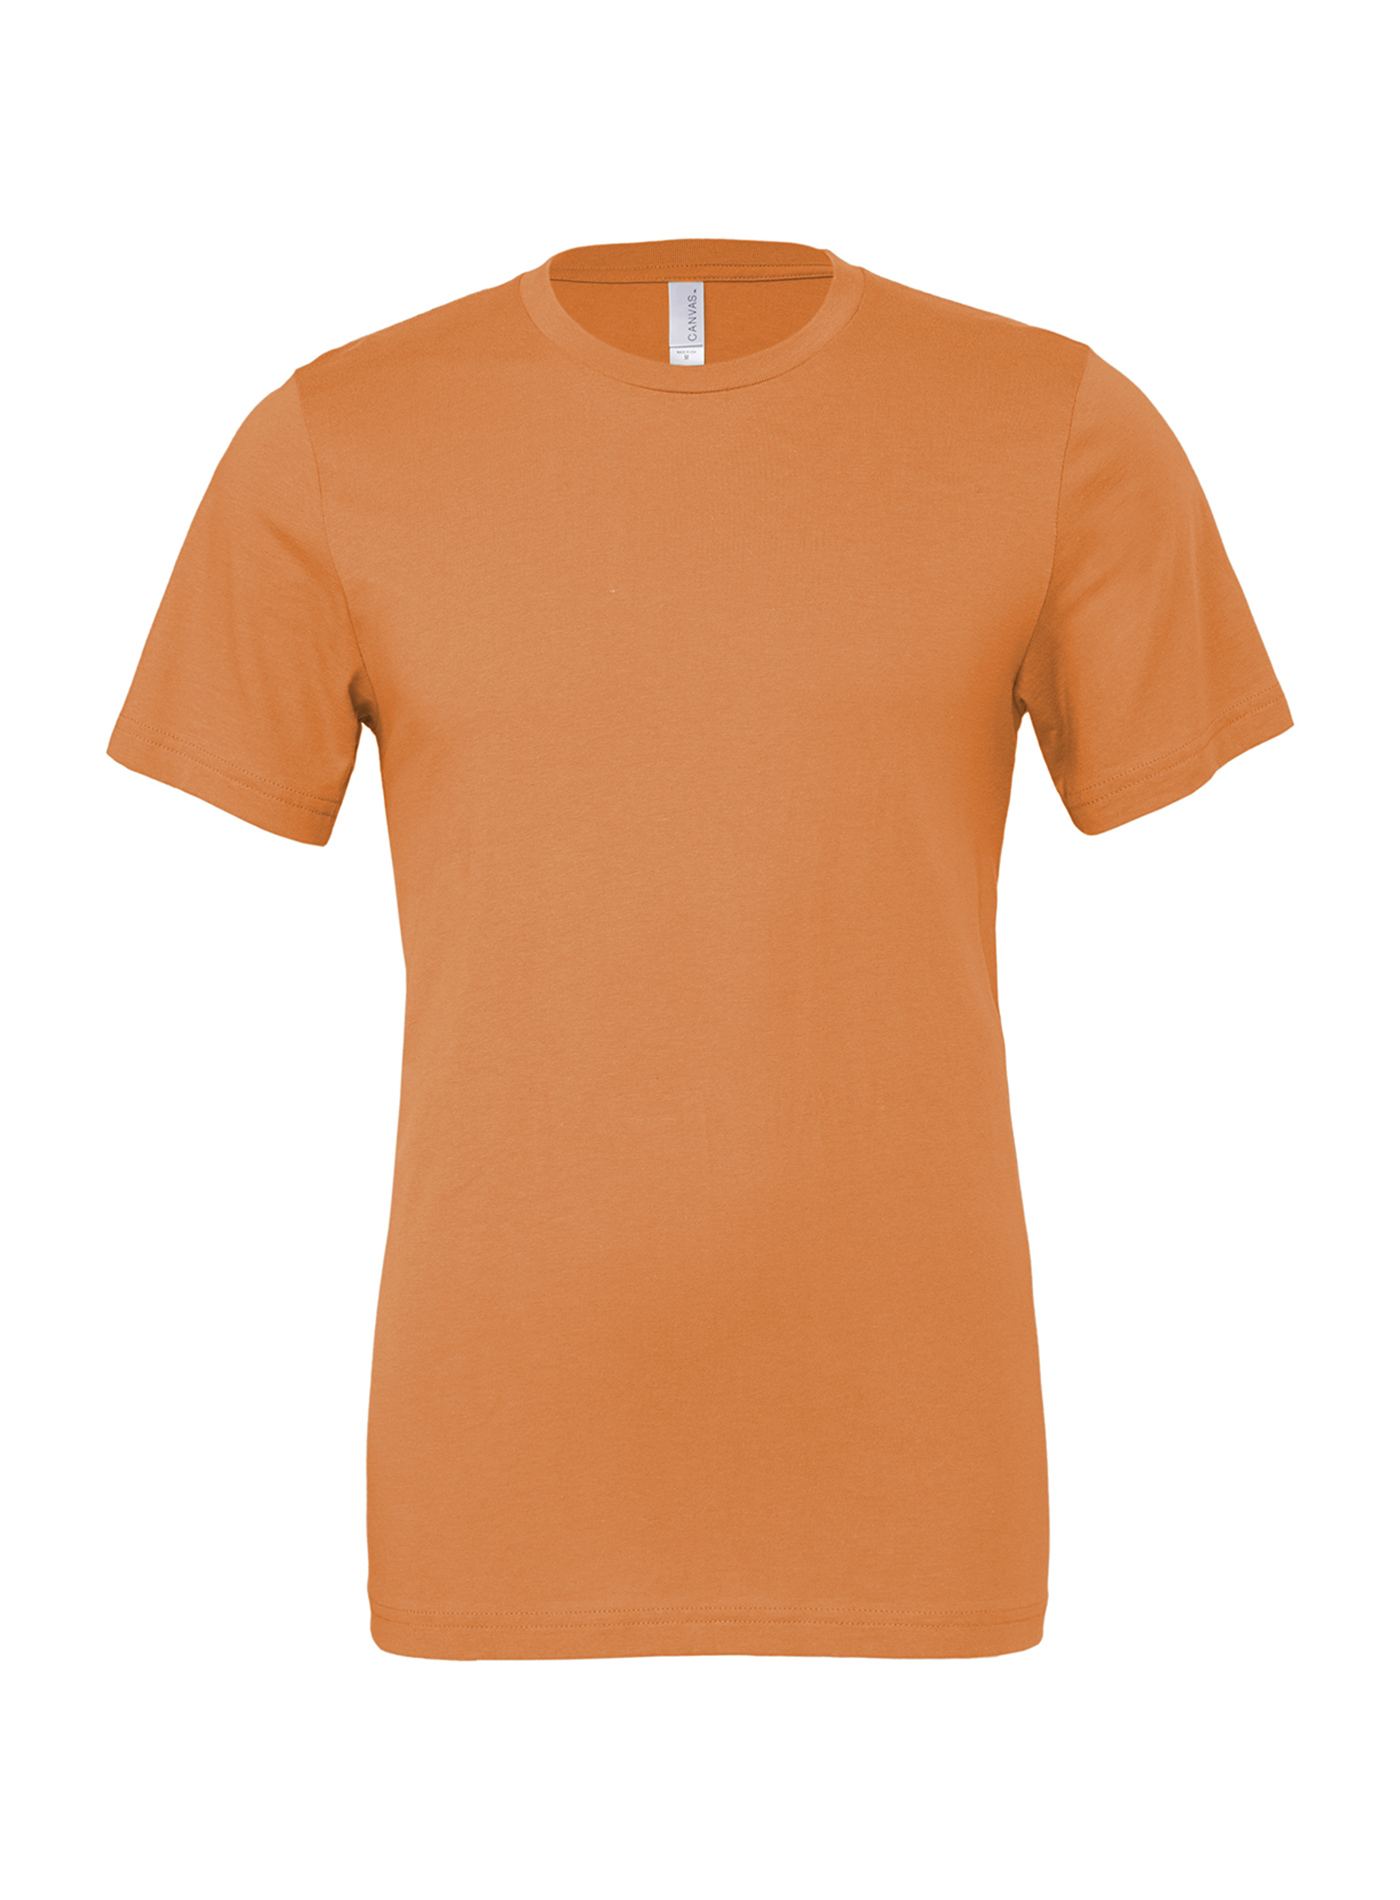 Unisex tričko Bella + Canvas Jersey - Oranžová L